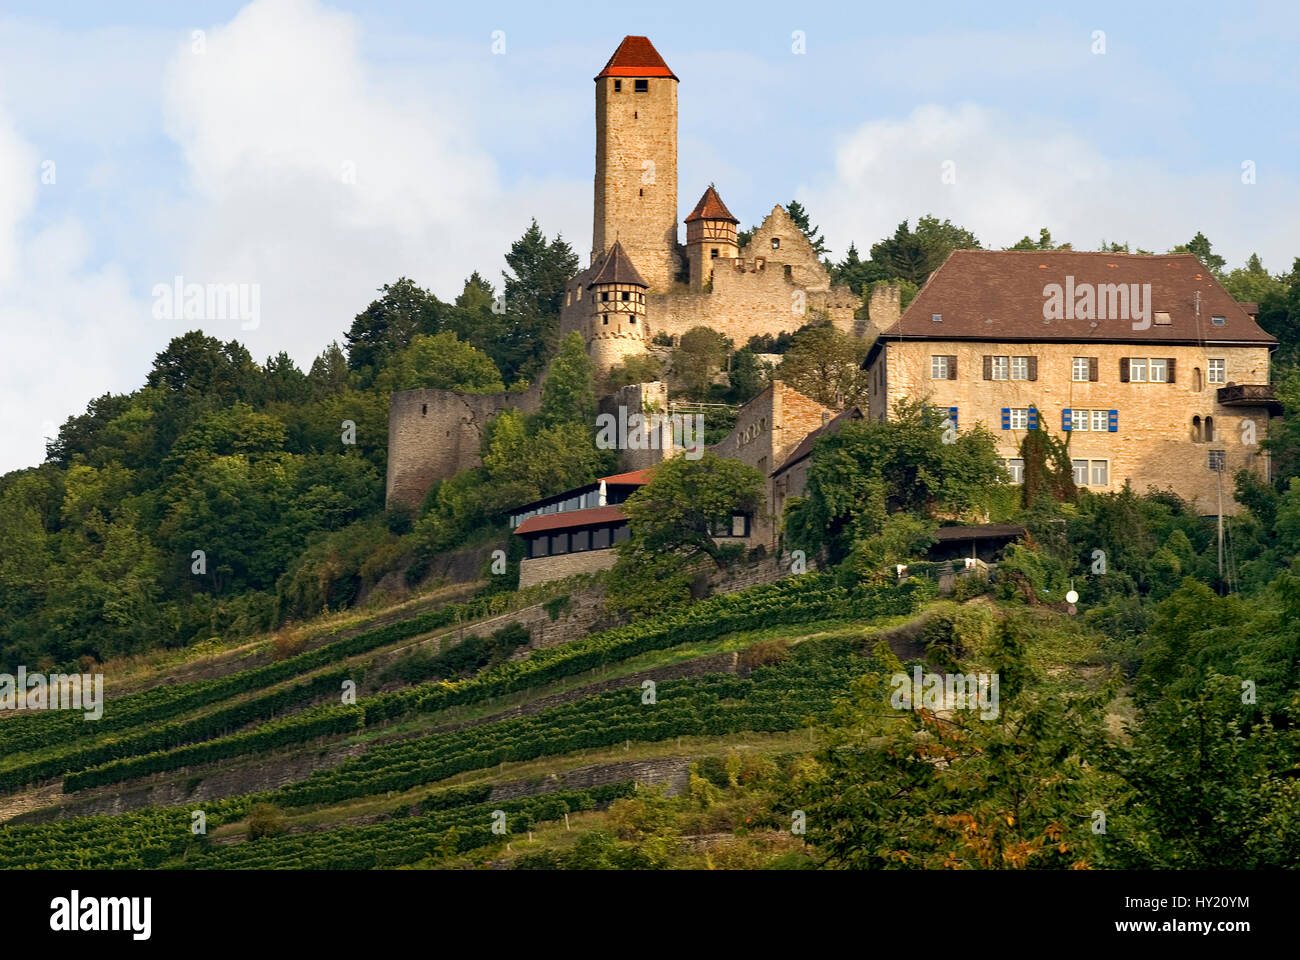 Blick auf die Burg Hornberg, die Burg des GÃ¶tz von Berlichingen, in Neckarzimmern in Baden WÃ¼rttemberg, Deutschland.   Image of the Castle Hornberg  Stock Photo